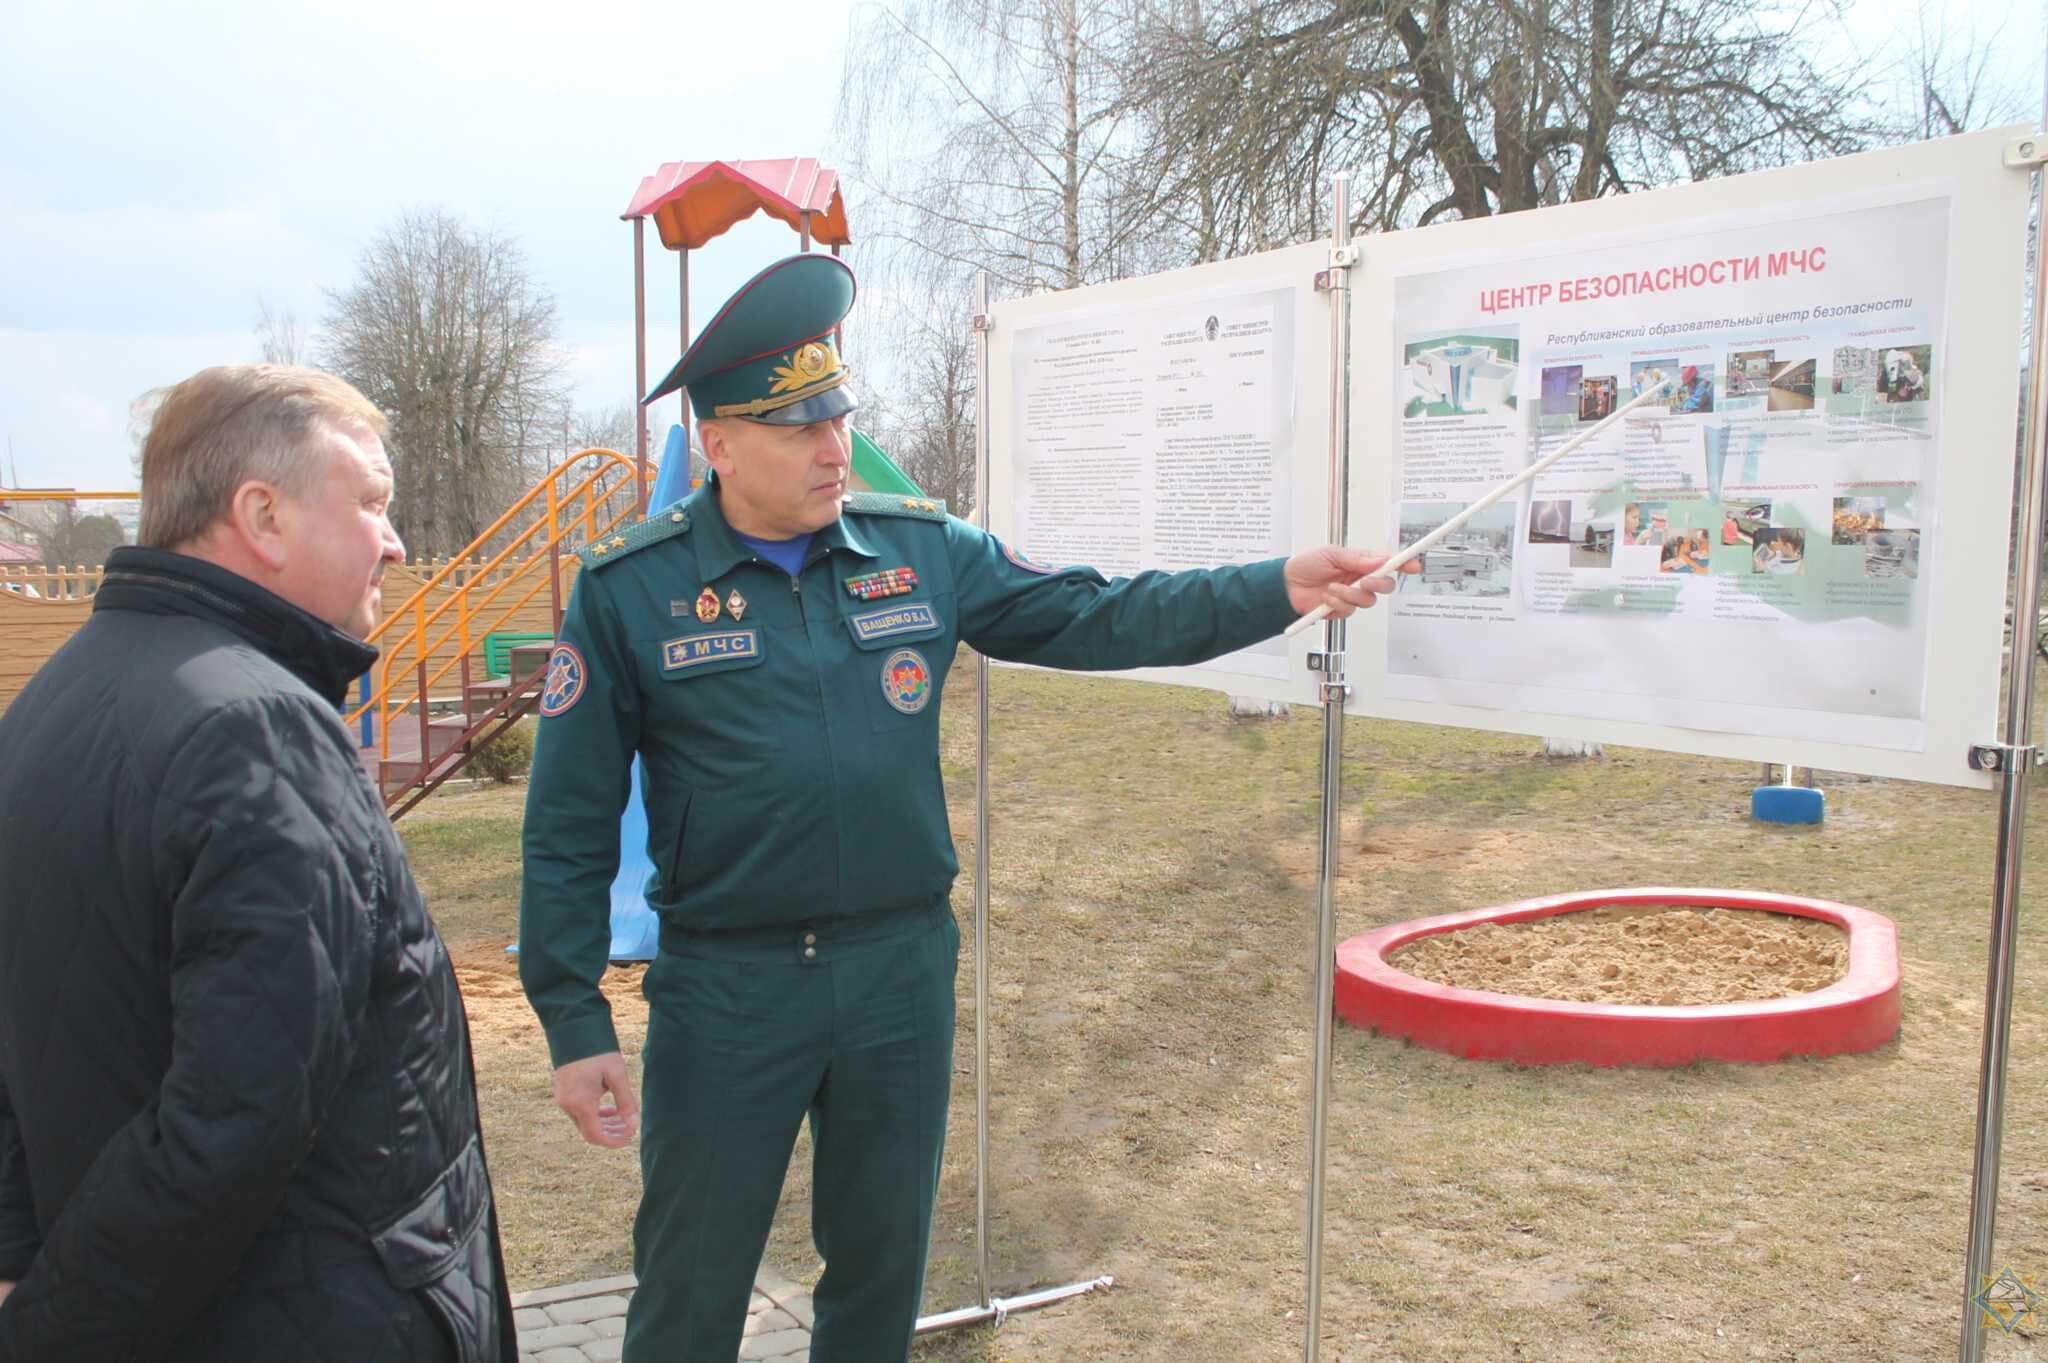 Премьер-министр Беларуси посетил Центр безопасности МЧС в Лиде